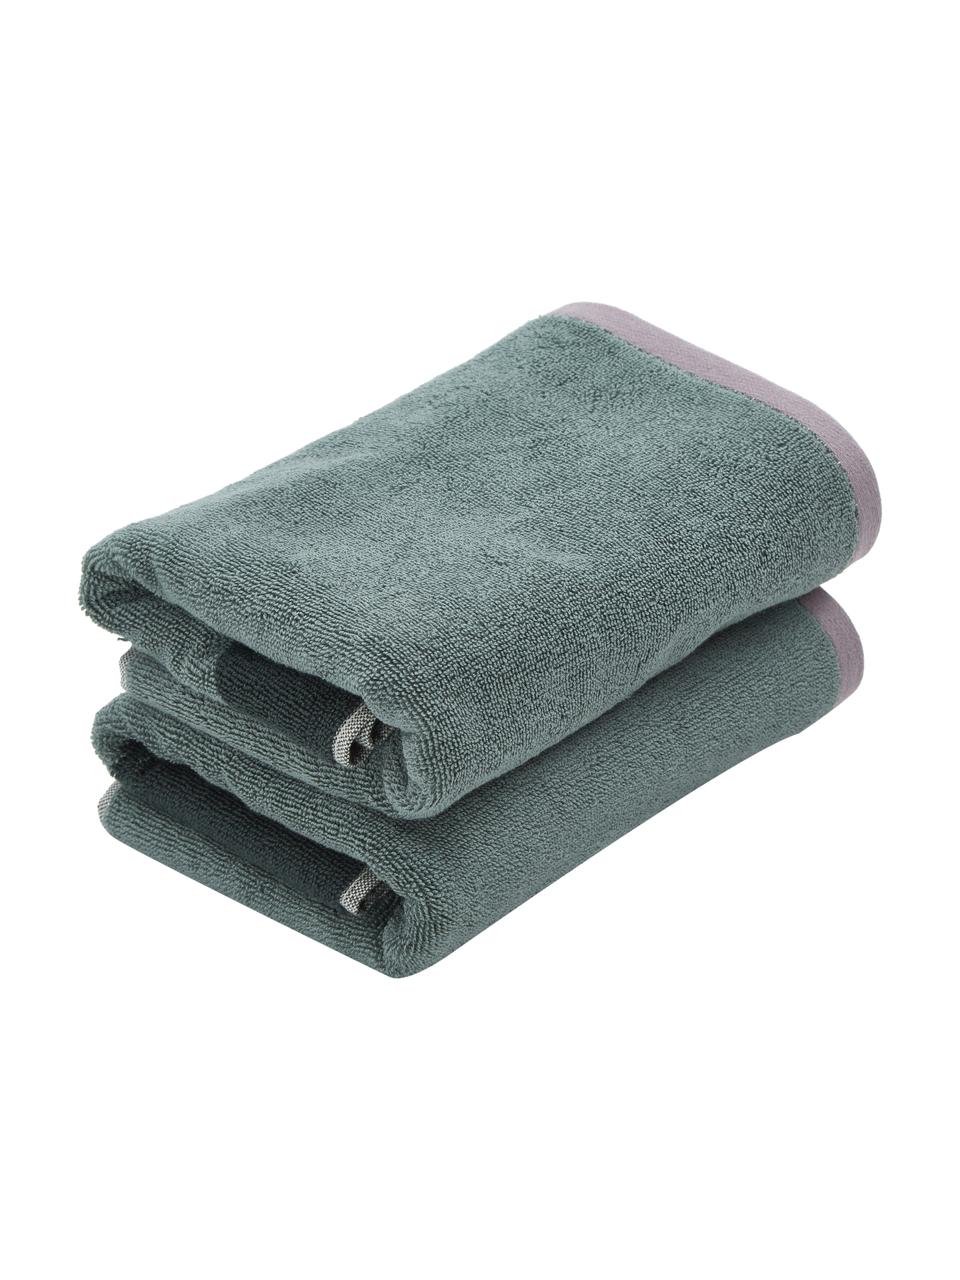 Ręcznik z bawełny organicznej Rock, różne rozmiary, 100% bawełna organiczna, Zielony, ciemny zielony, Ręcznik do rąk, S 50 x D 95 cm, 2 szt.